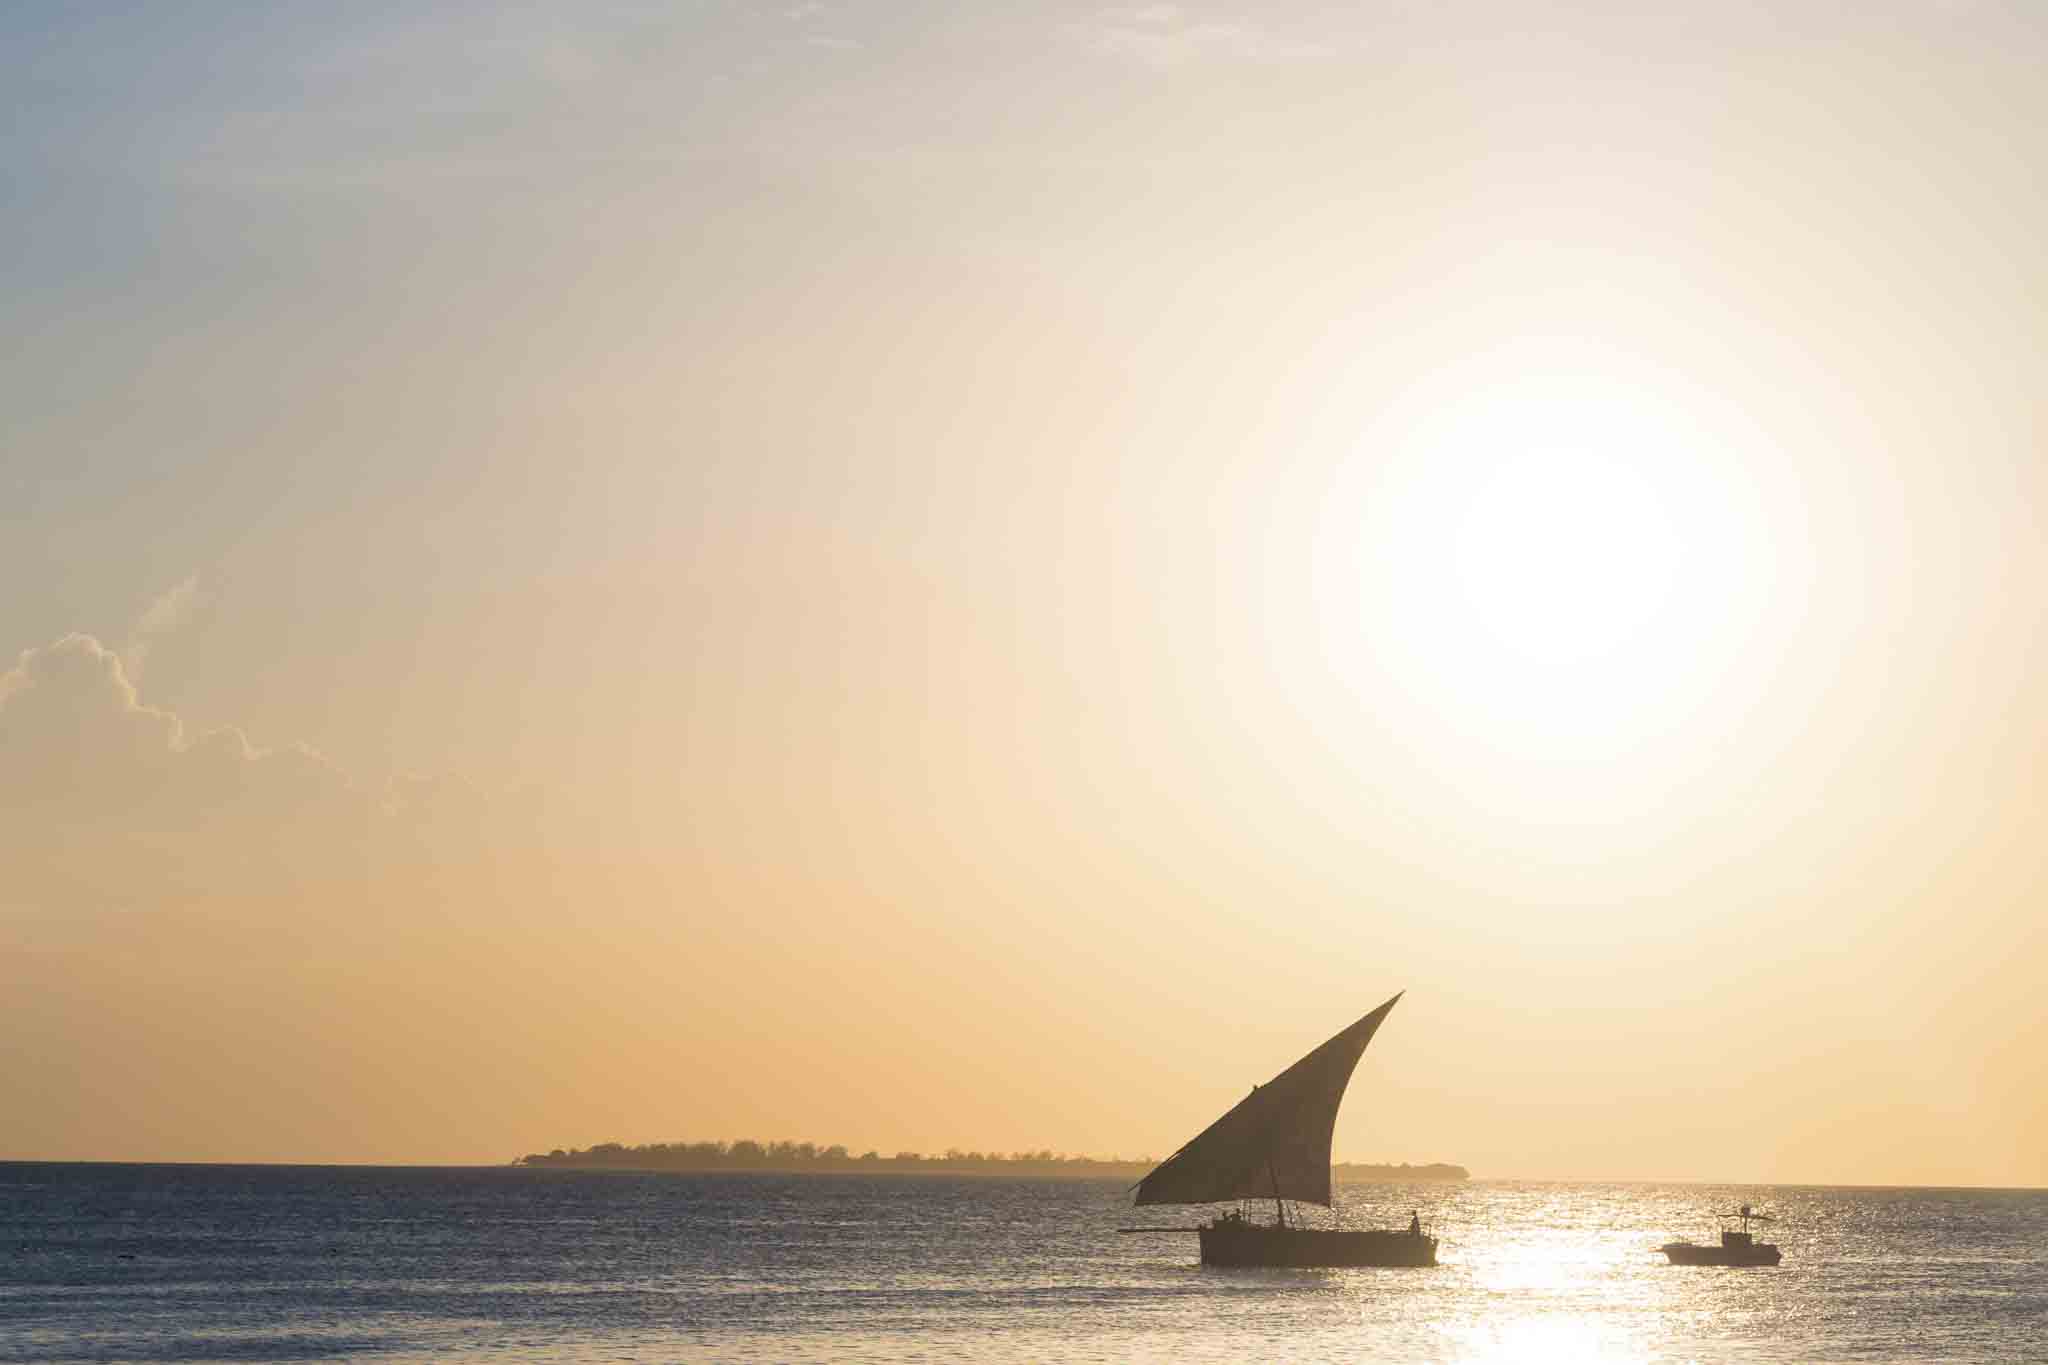 Dhow Boat Sunset Cruise Zanzibar Tanzania